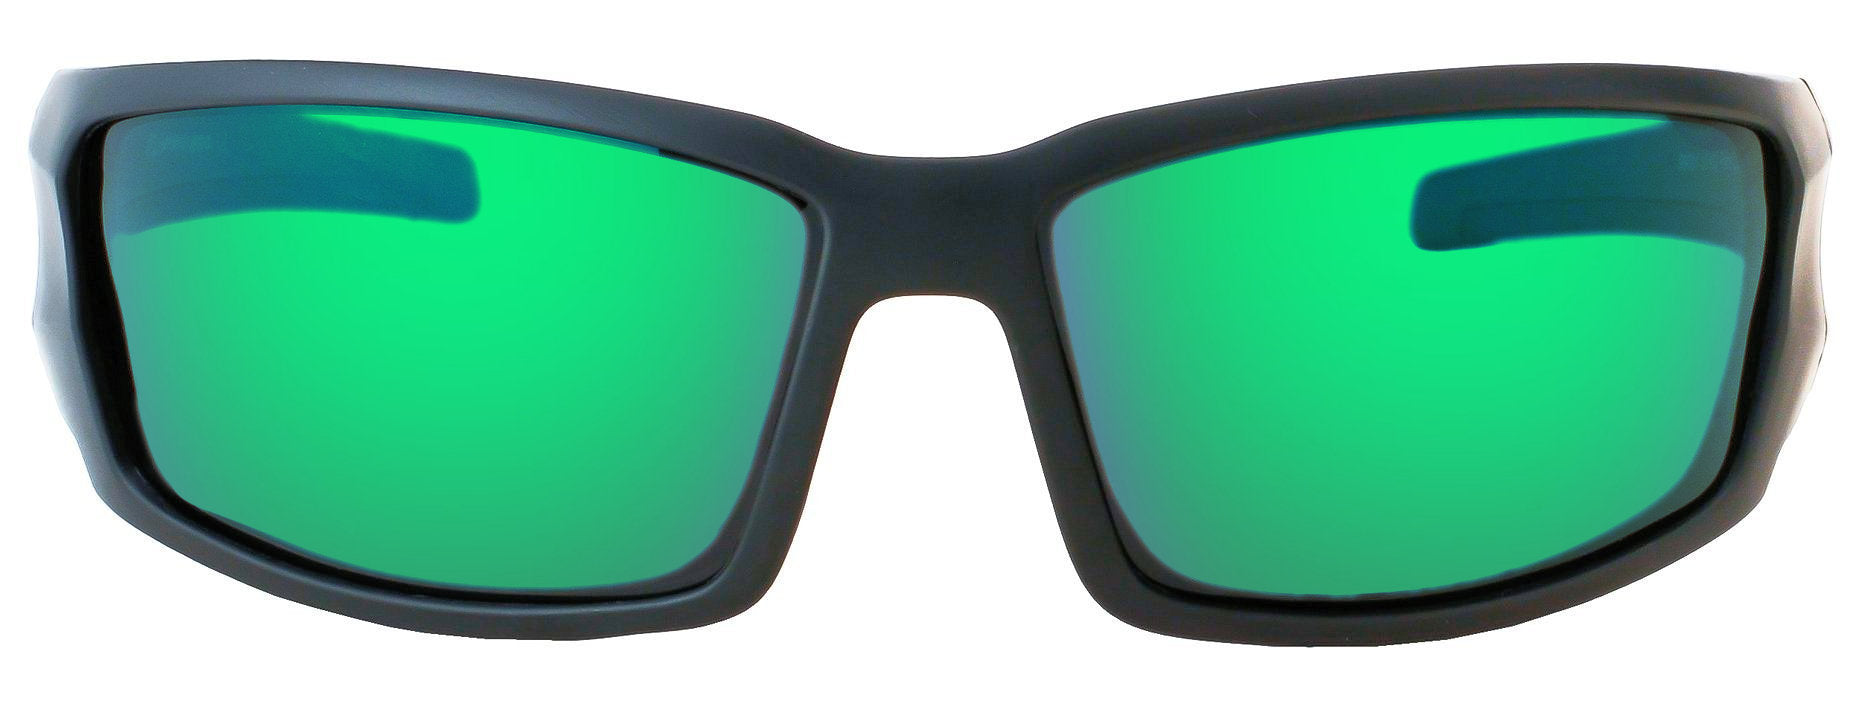 Second image: Polarized Sunglasses for Men - Premium Sport Sunglasses - HZ Series Aquabull